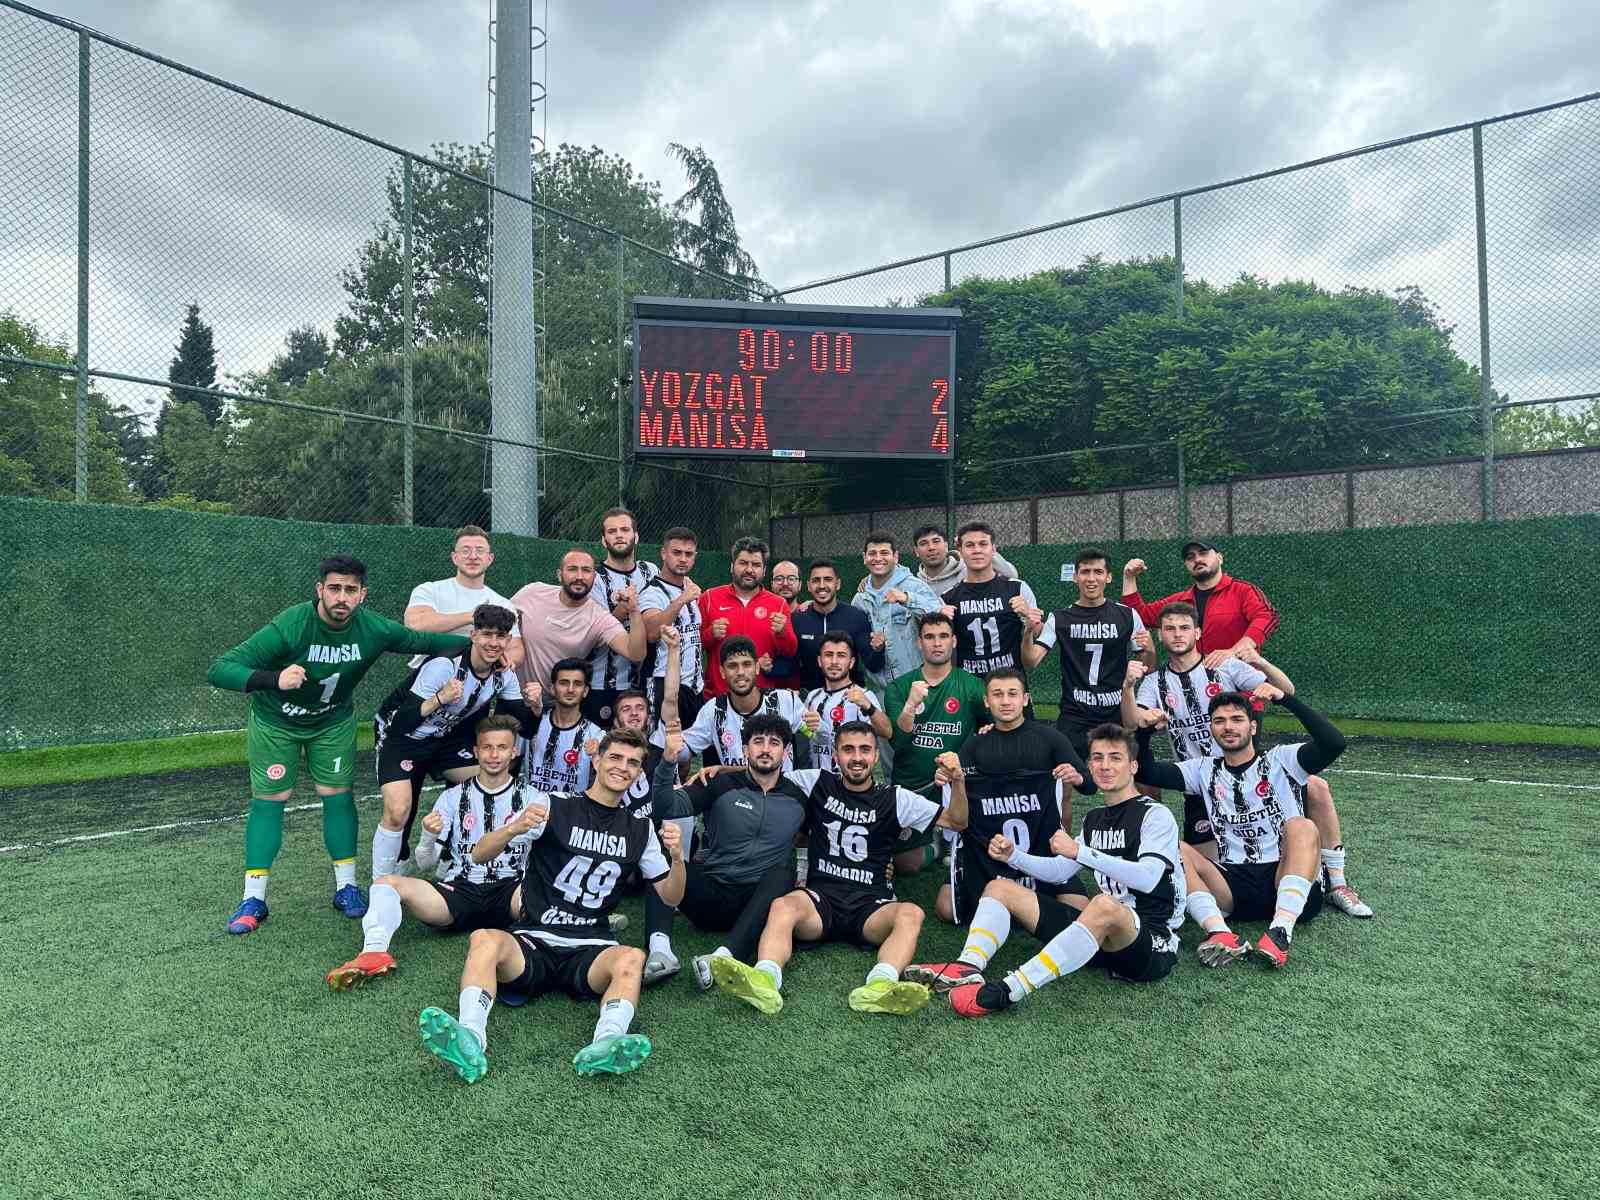 Manisa Yurtlar Futbol Takımı Türkiye şampiyonu oldu
